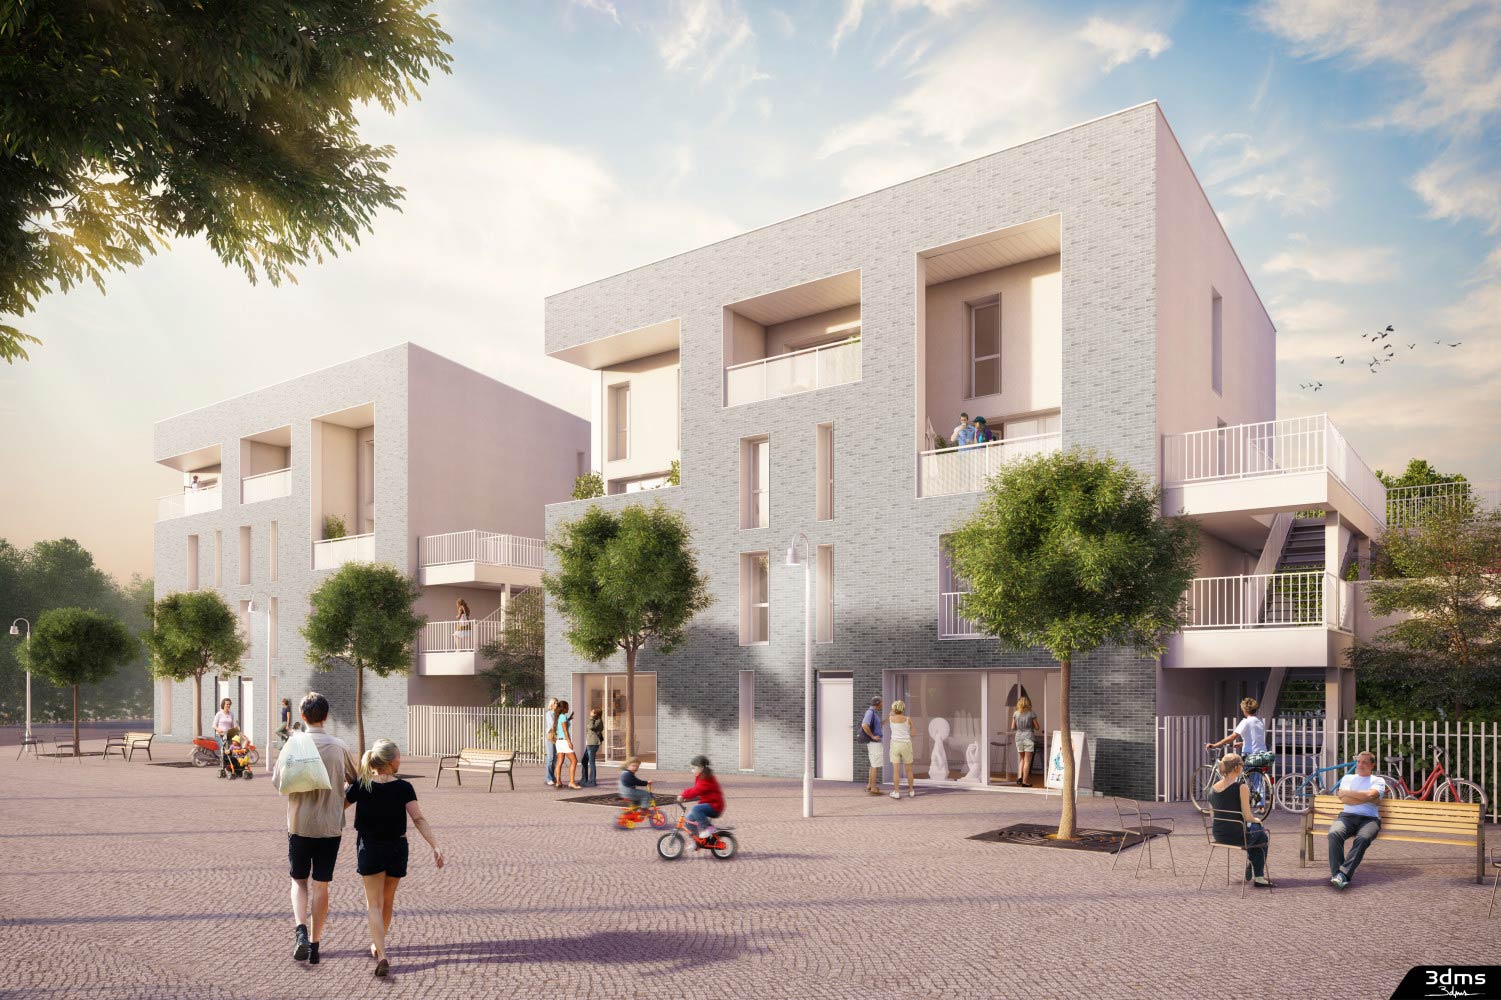 Visuel de perspective extérieure 3D pour la promotion immobilière avec illustration d'ambiance de quartier